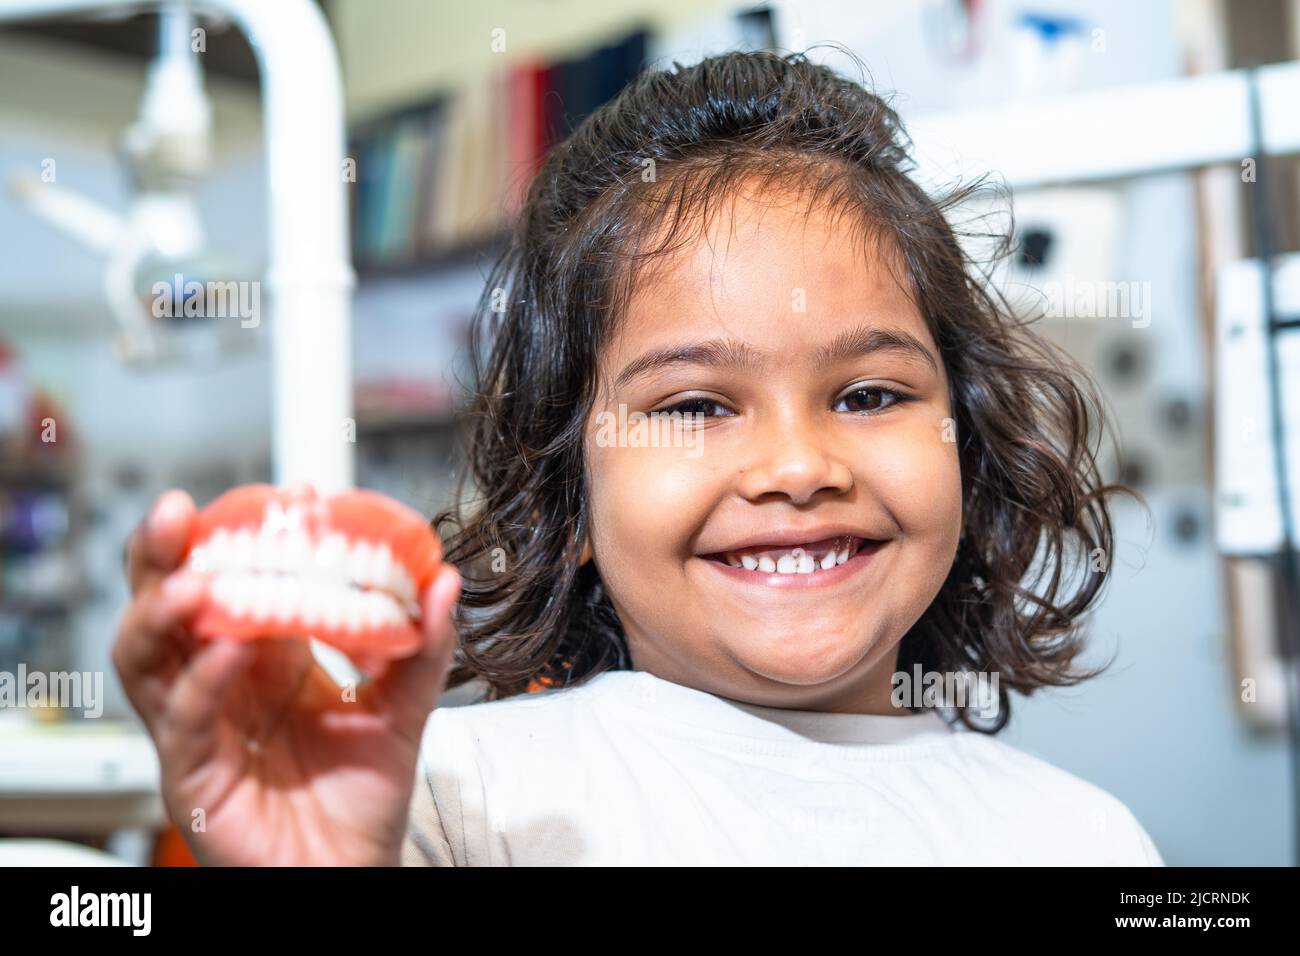 Joyeux sourire enfant montrant des prothèses dentaires en regardant la caméra - concept de soins dentaires ou oraux santé pour enfants. Banque D'Images